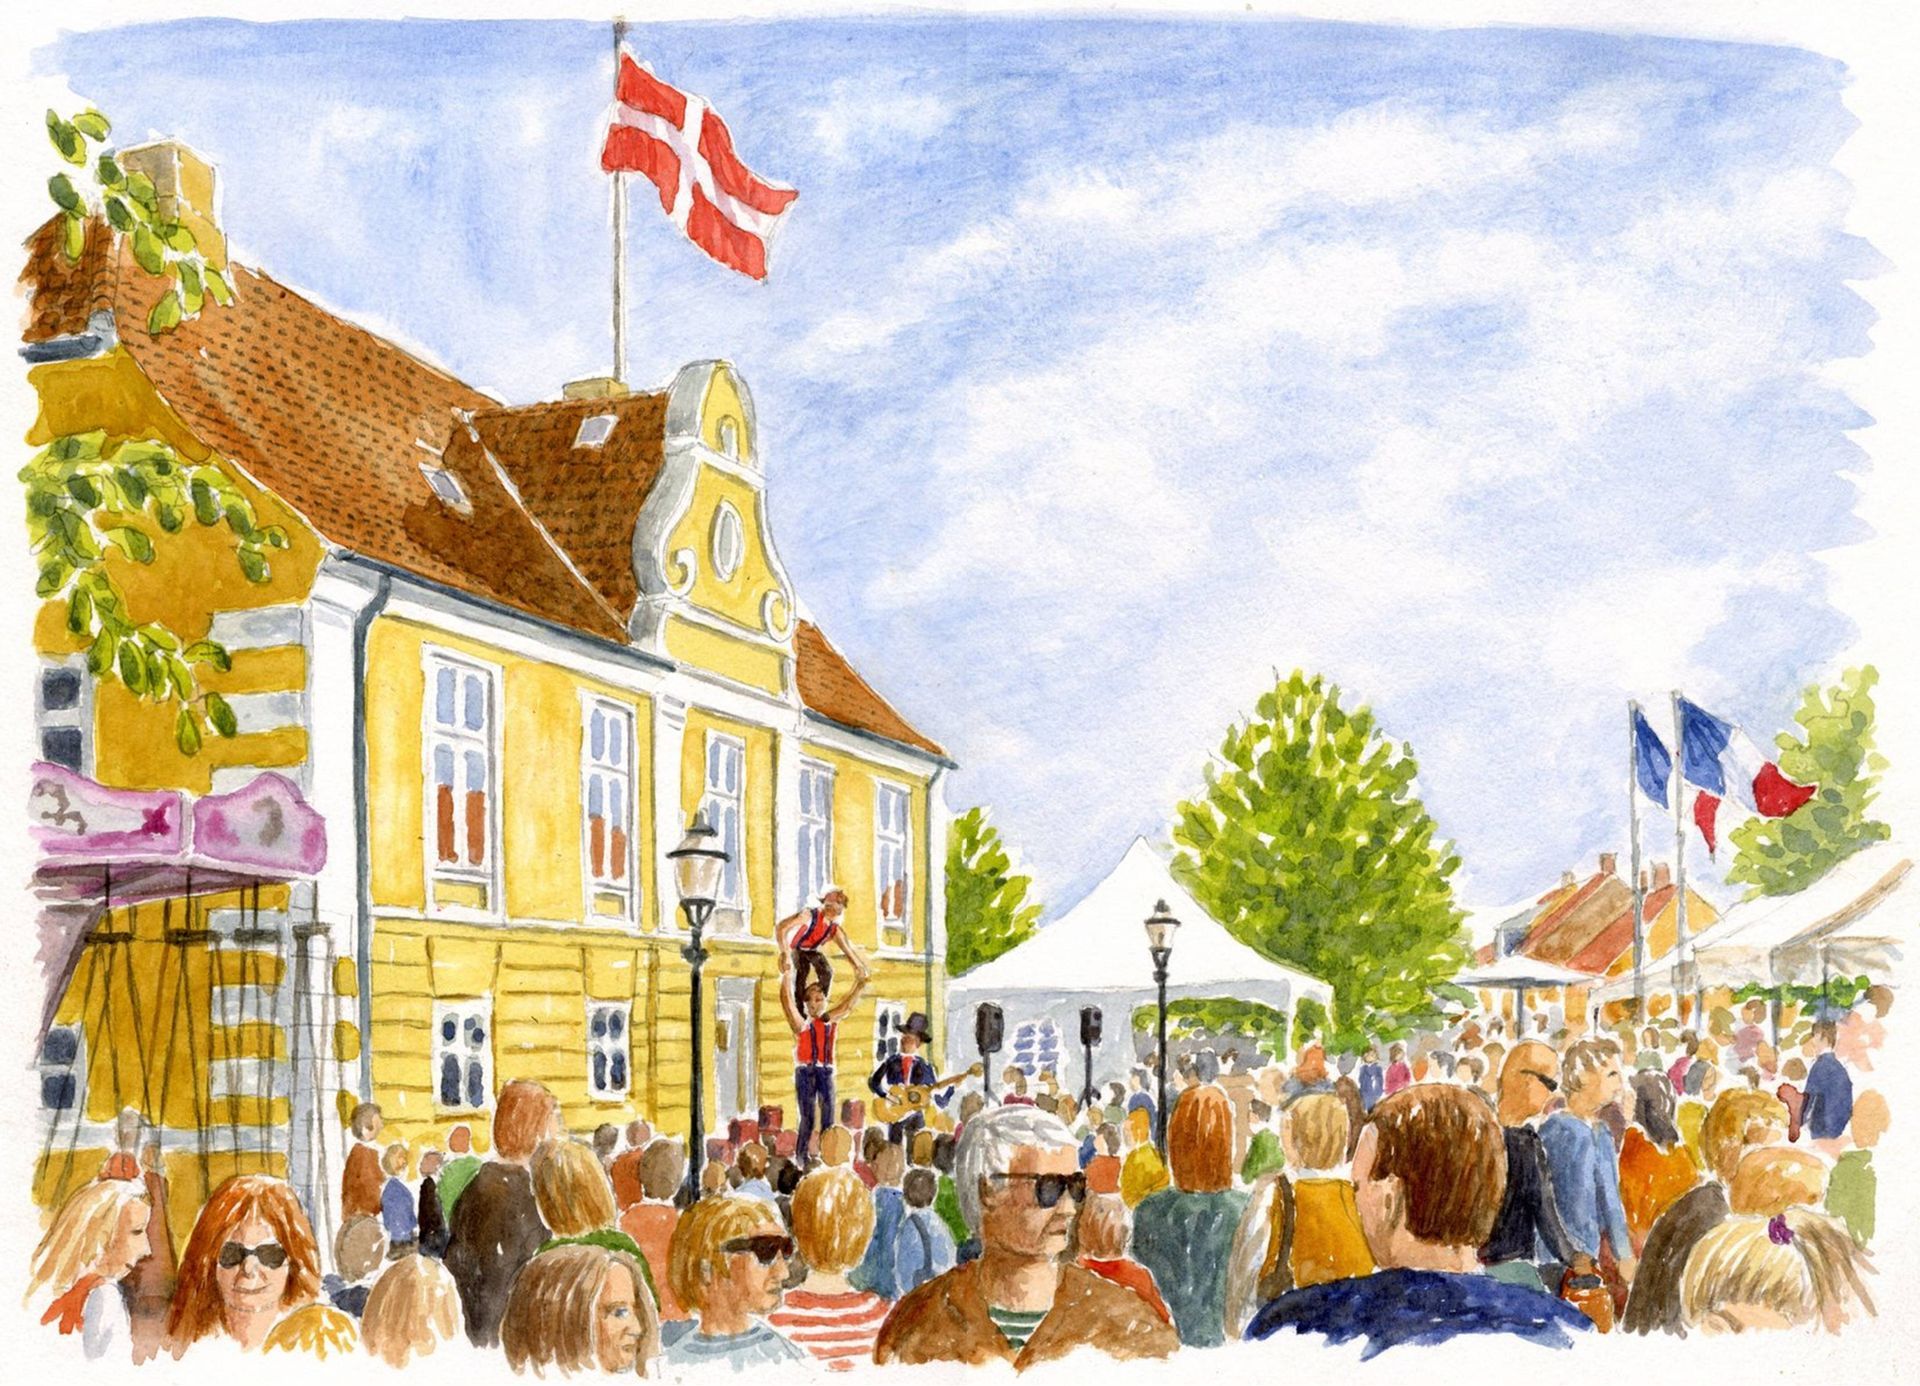 Maleri af Præstø Rådhus under Fransk Forår